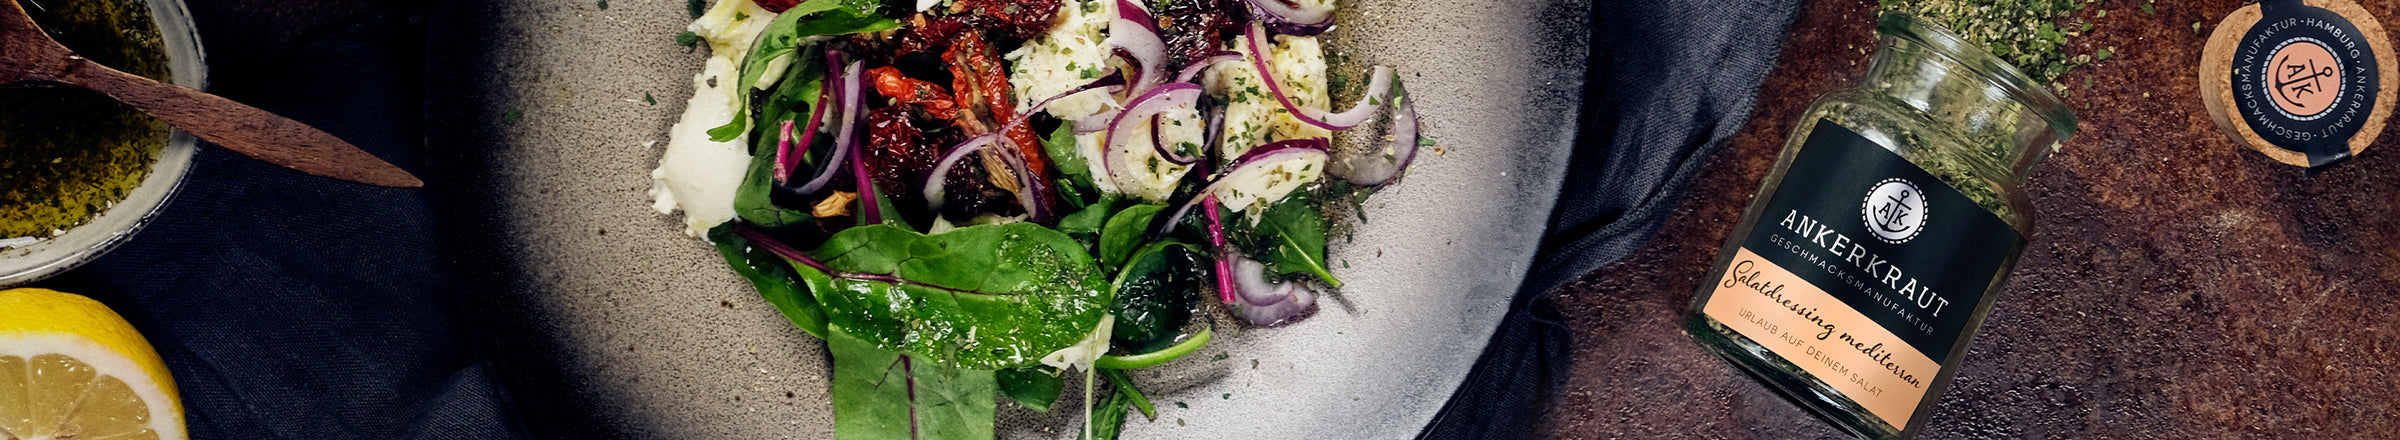 Salat würzen: für einen frischen, knackigen Geschmack